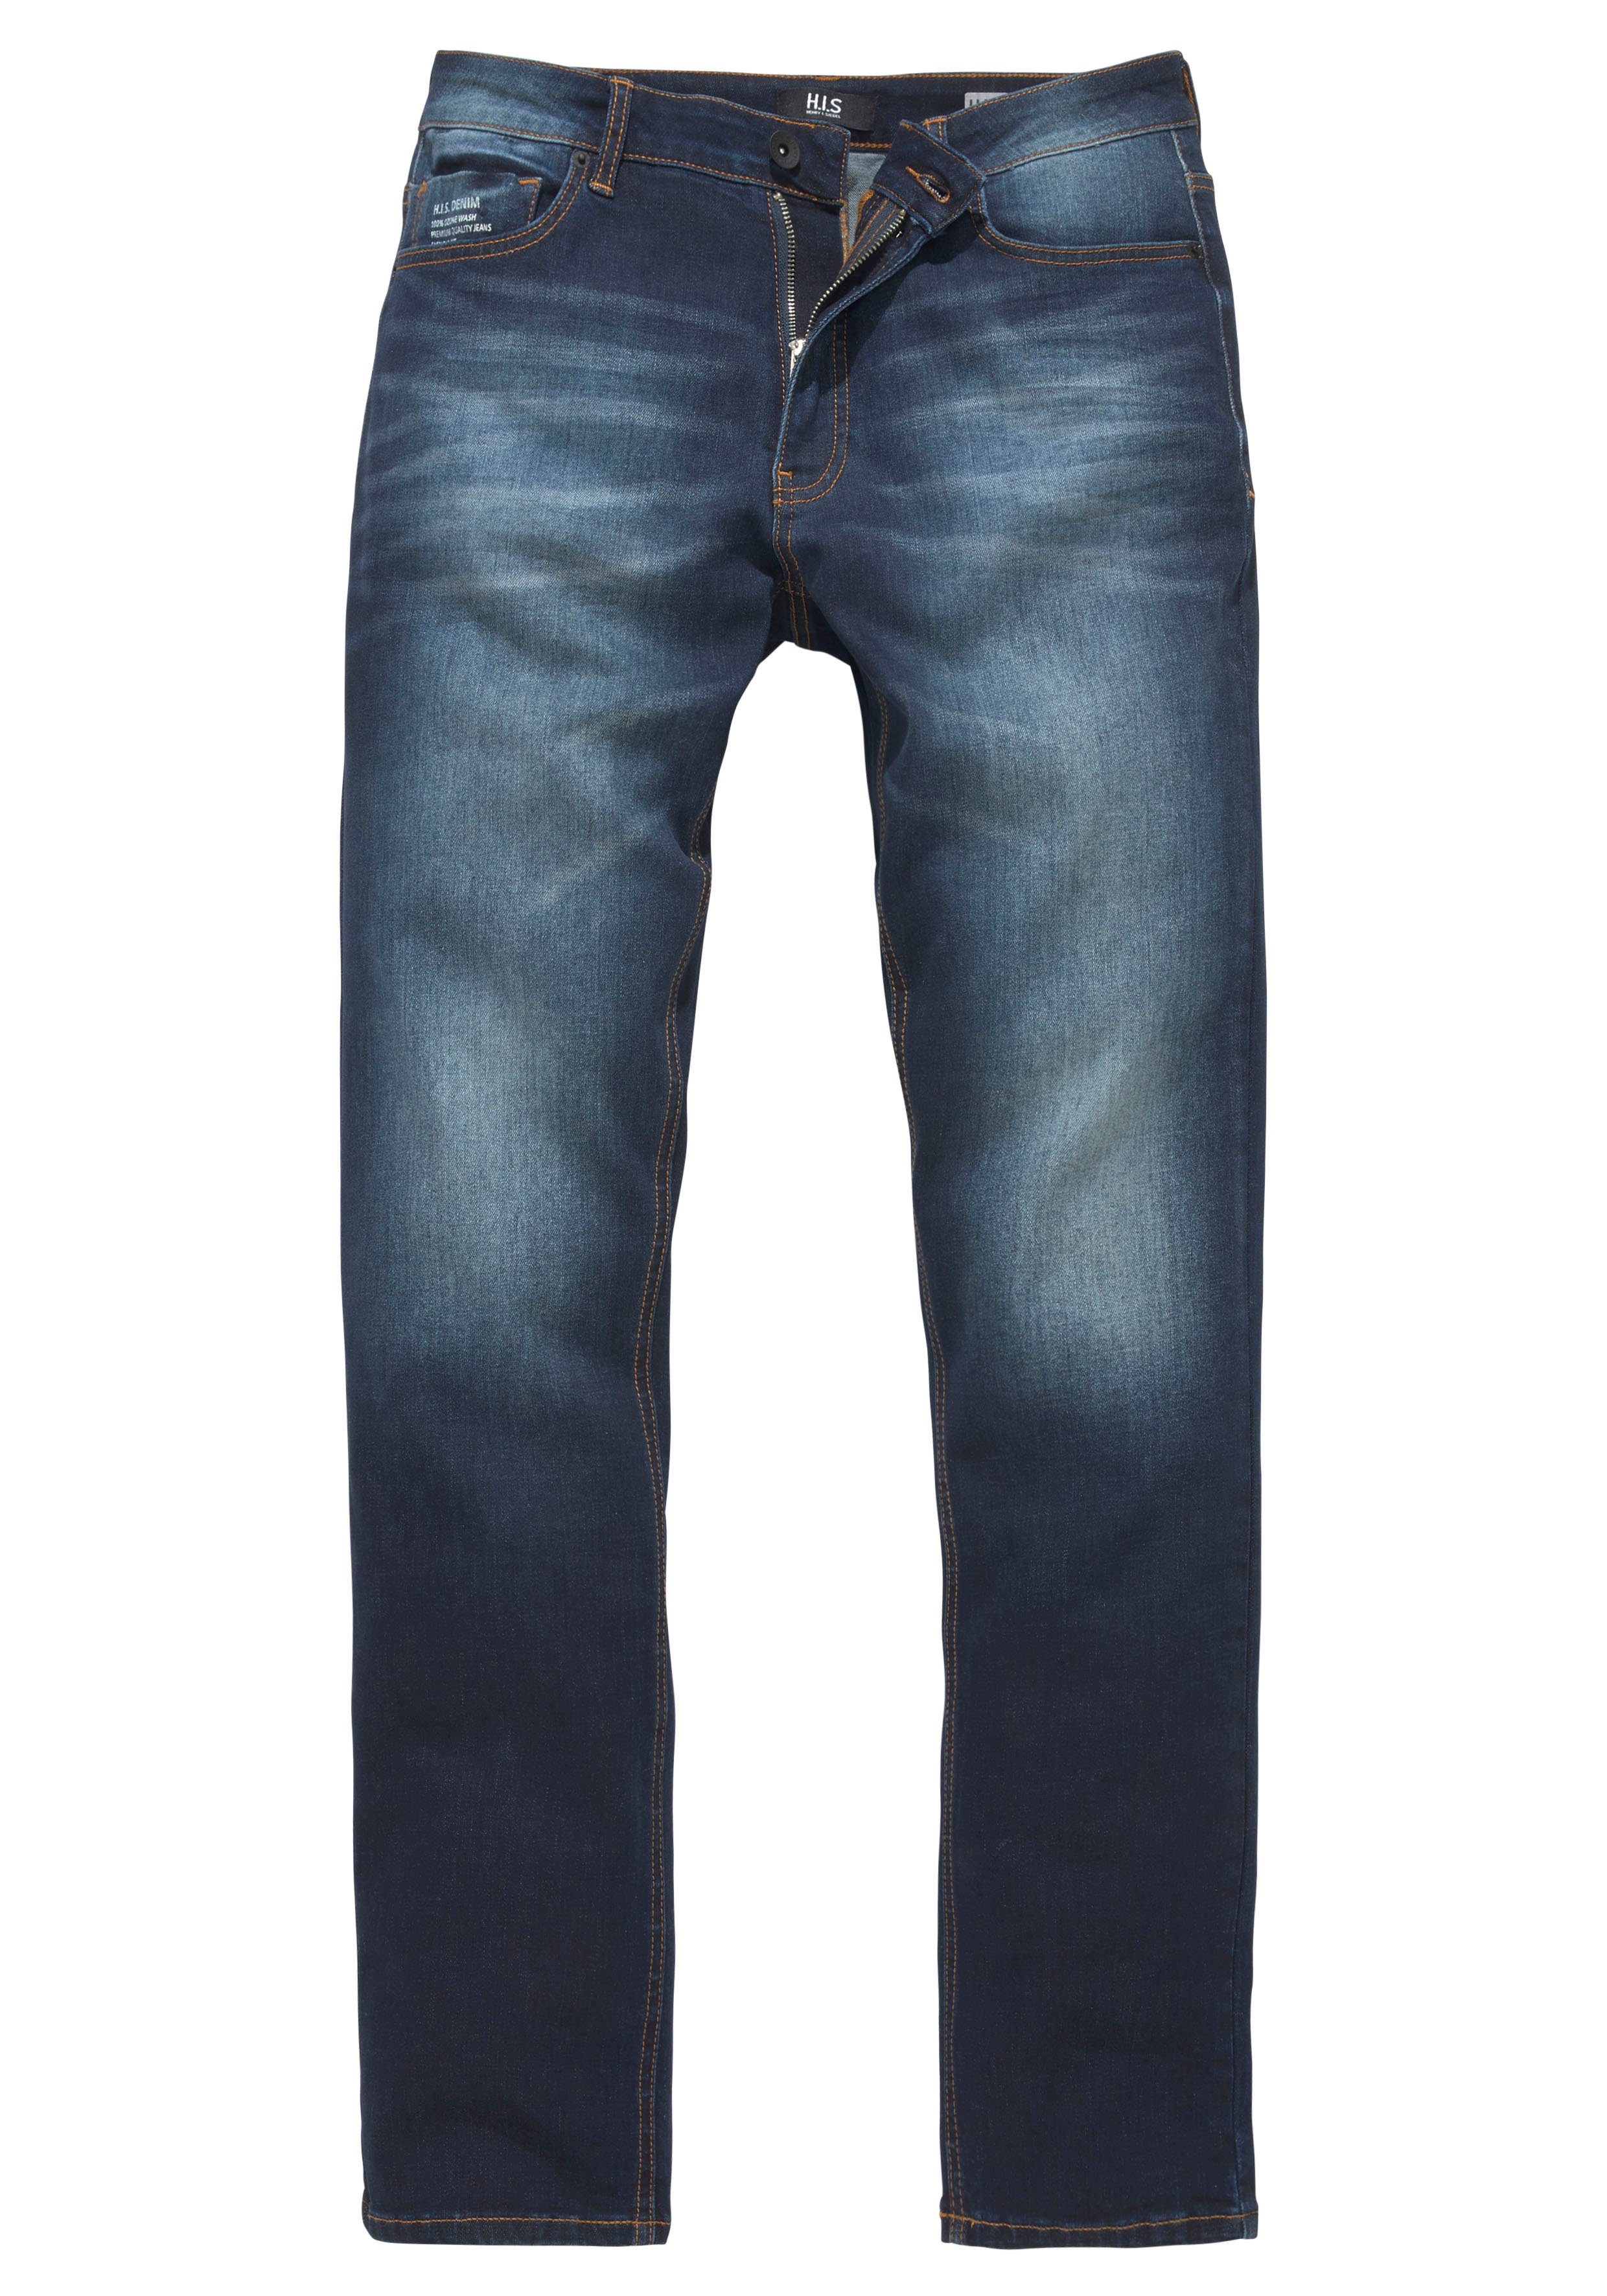 H.I.S Straight-Jeans Produktion Ozon Ökologische, wassersparende durch DIX Wash darkblue-used